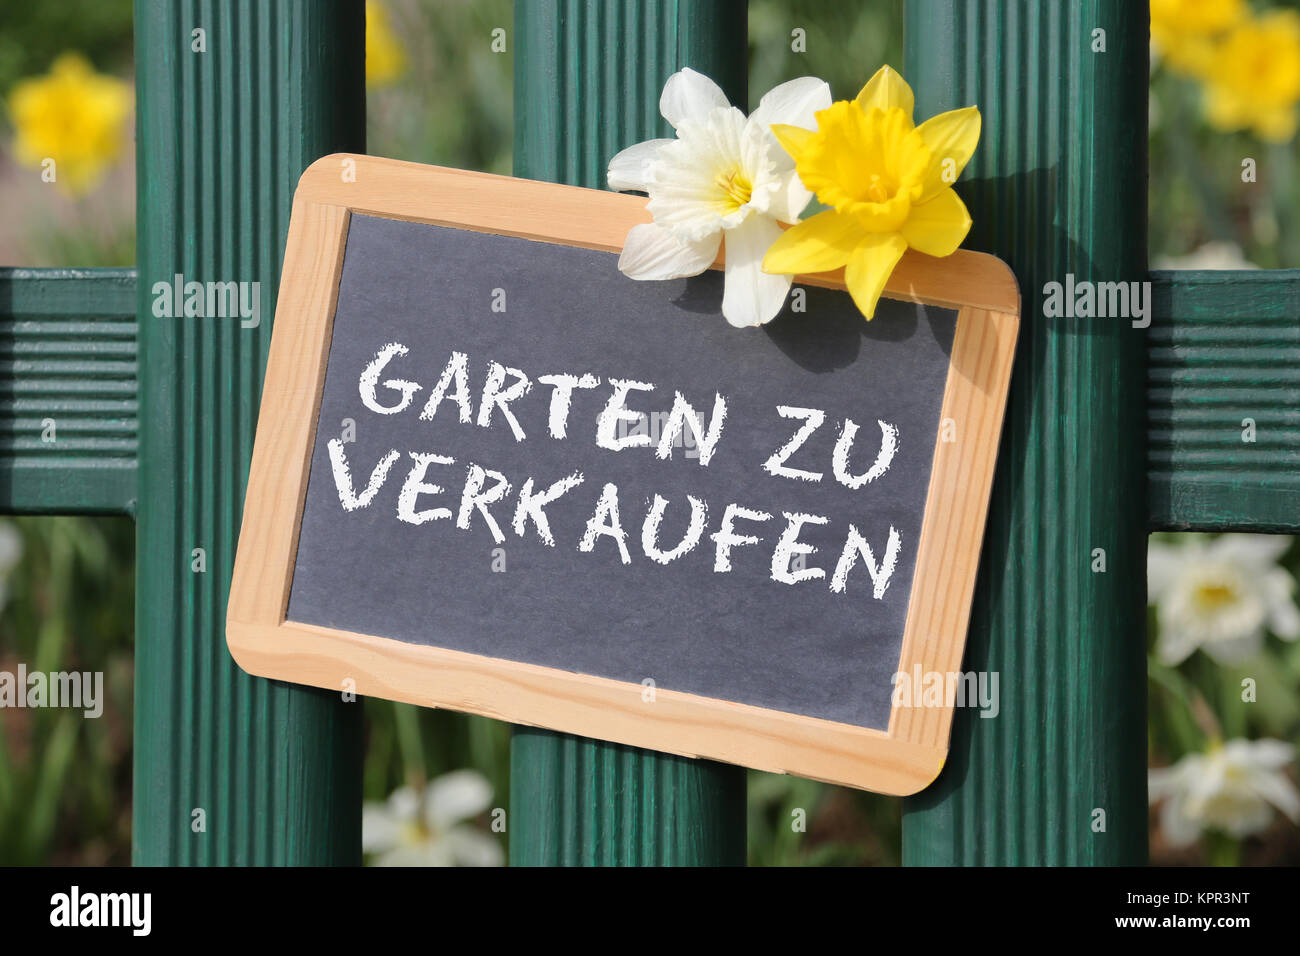 Garten zu verkaufen Verkauf mit Blumen Blume Tafel Schild auf Zaun Stock Photo